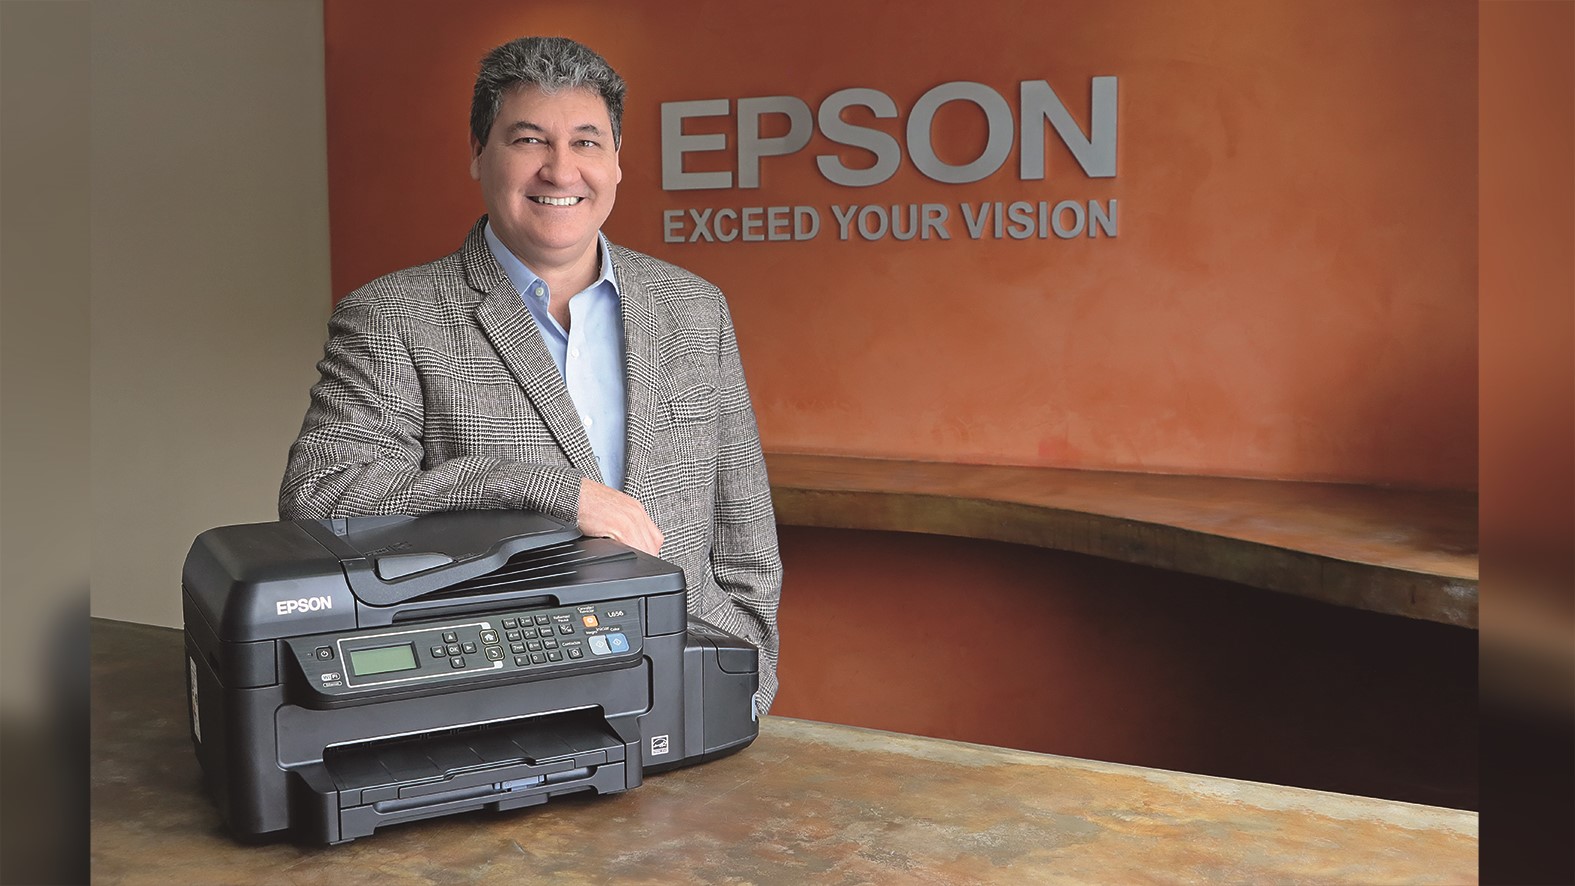 Epson lanza impresoras sin cartuchos con autonomía de dos años